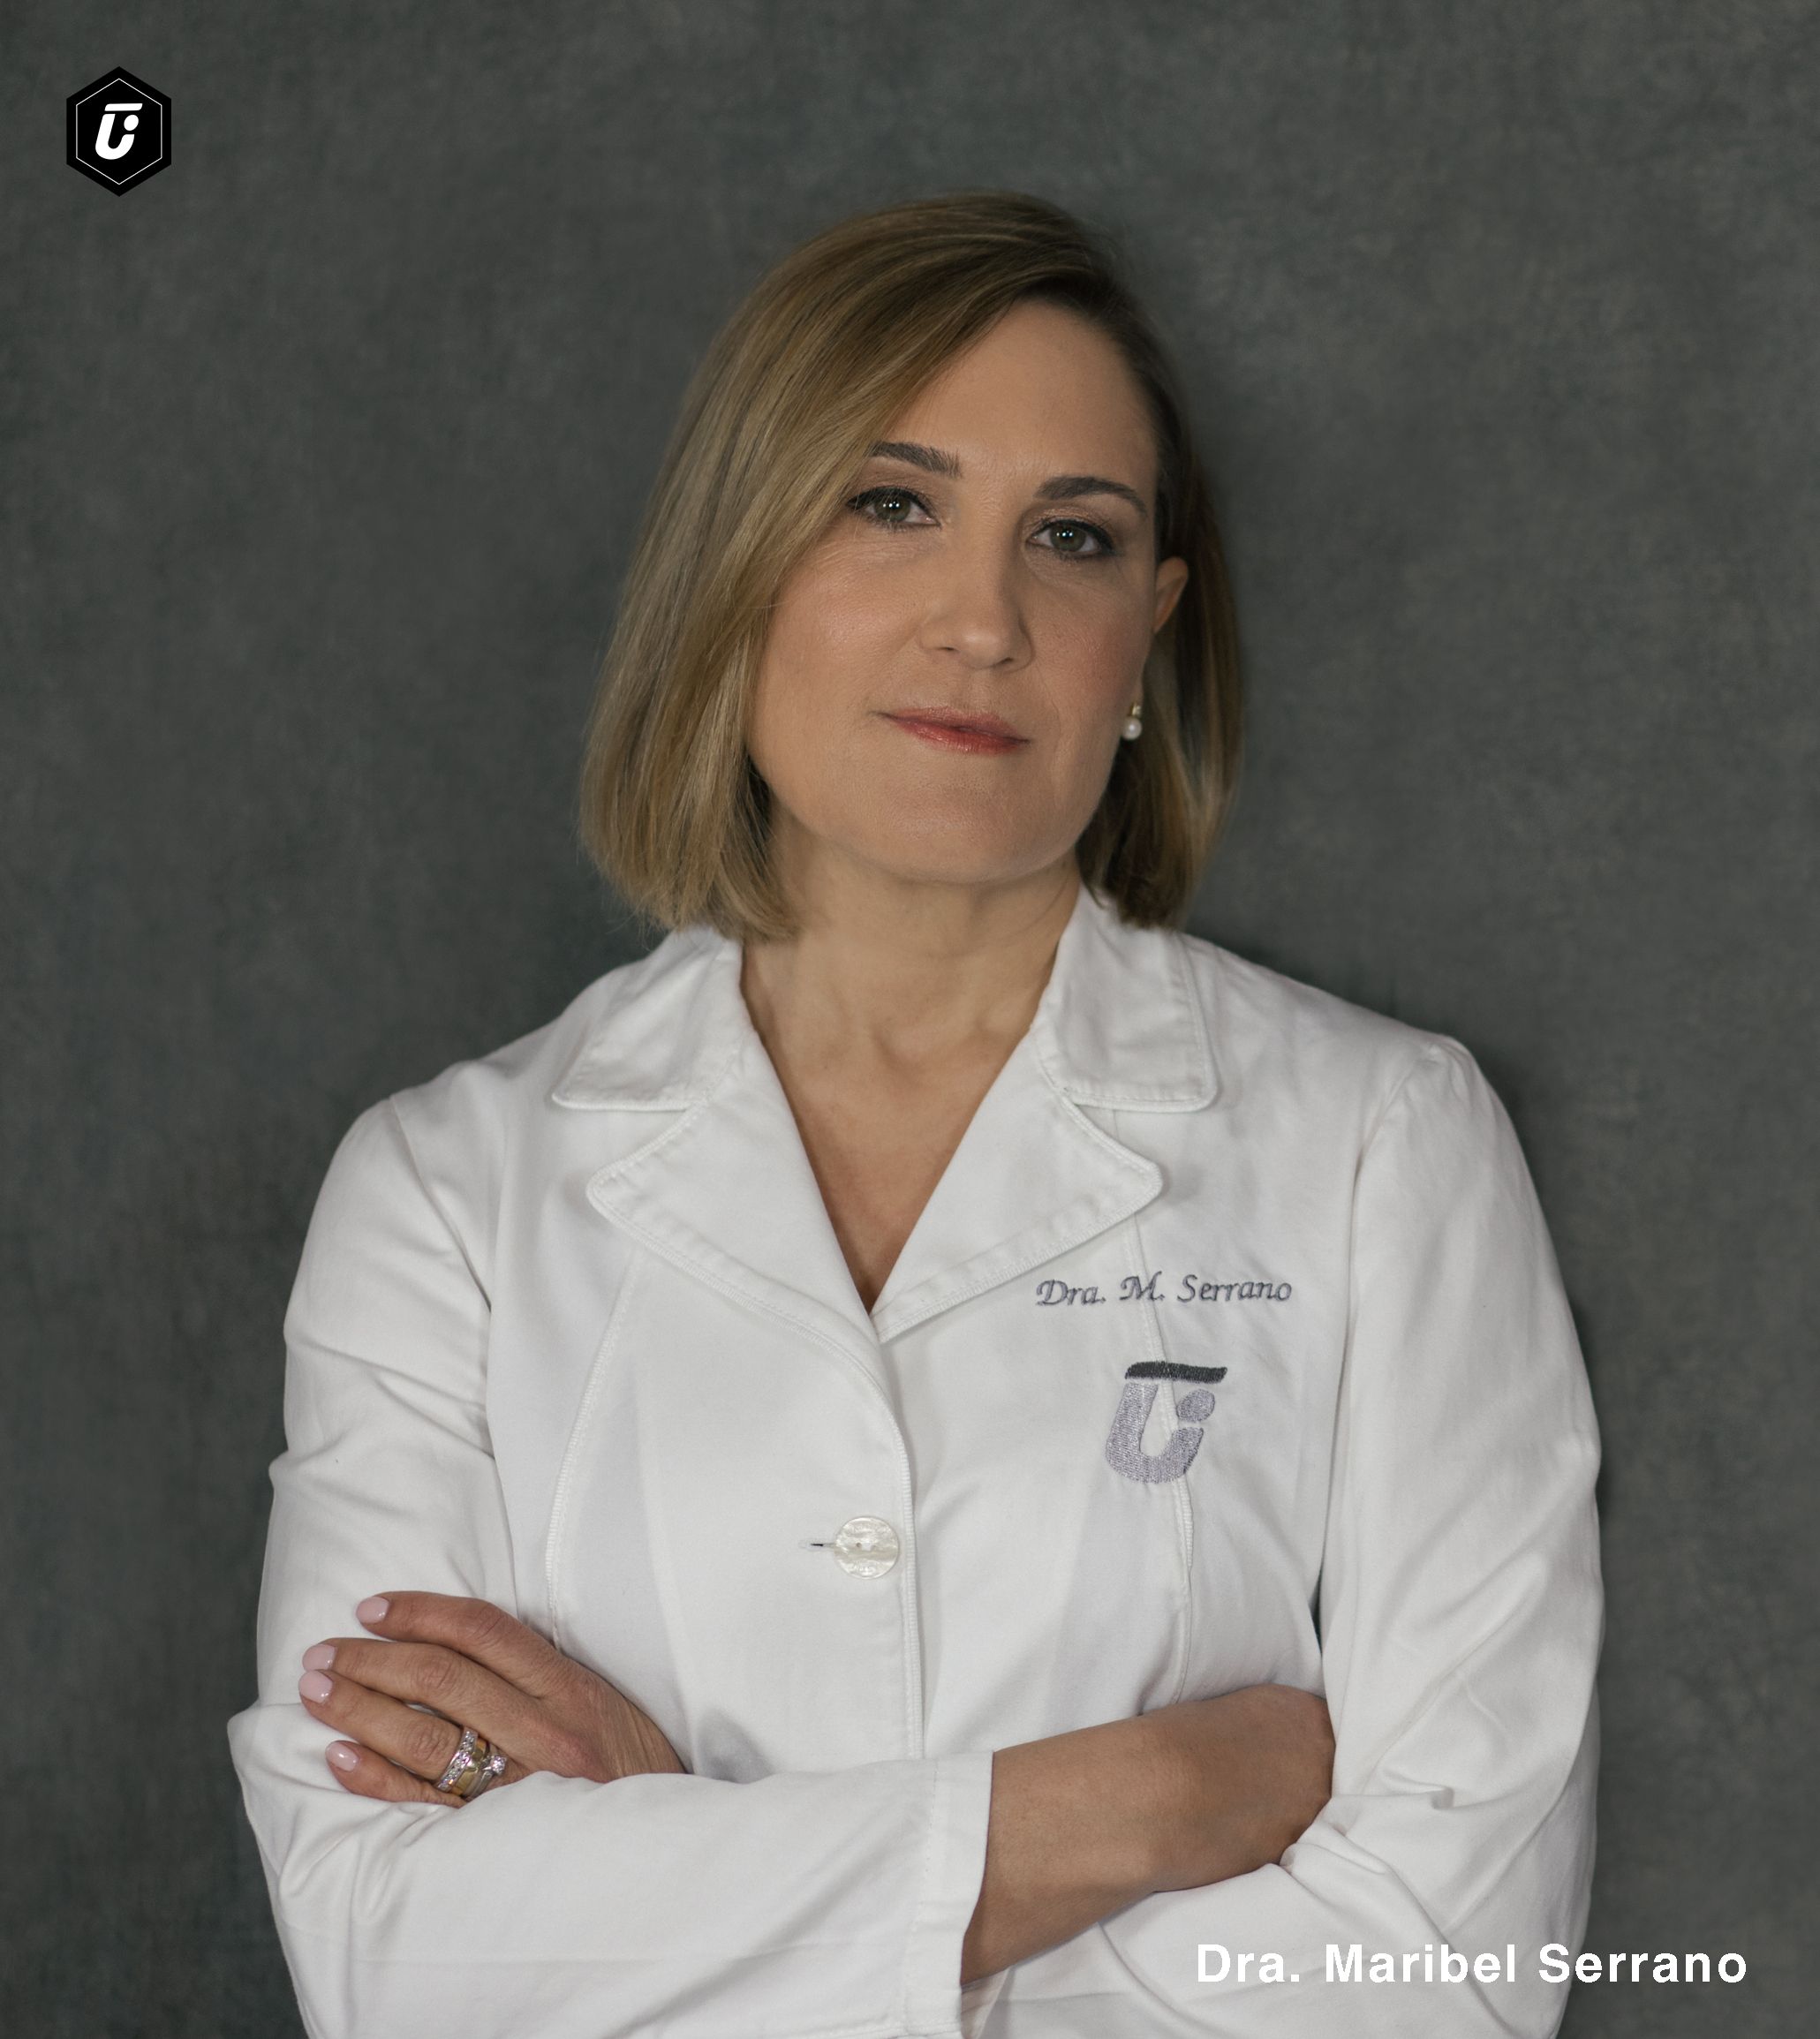 Dra. Maribel Serrano, médico experta de Clínica Tufet